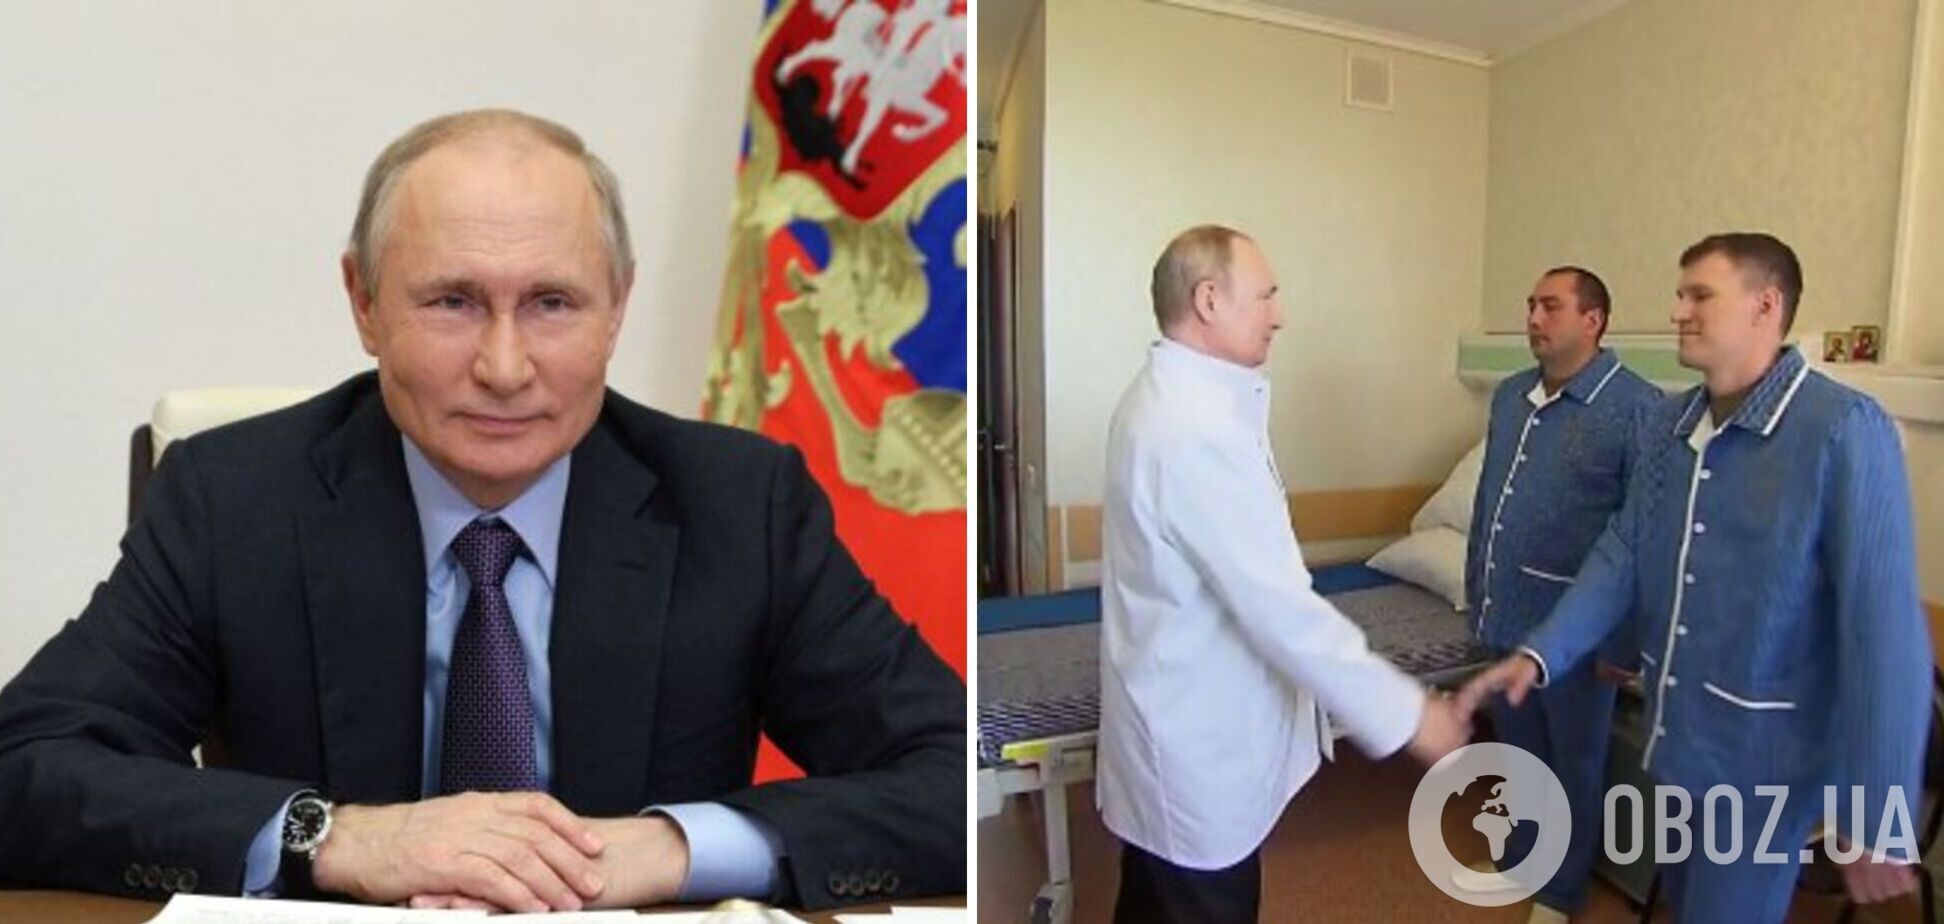 Путин оконфузился с новым постановочным видео